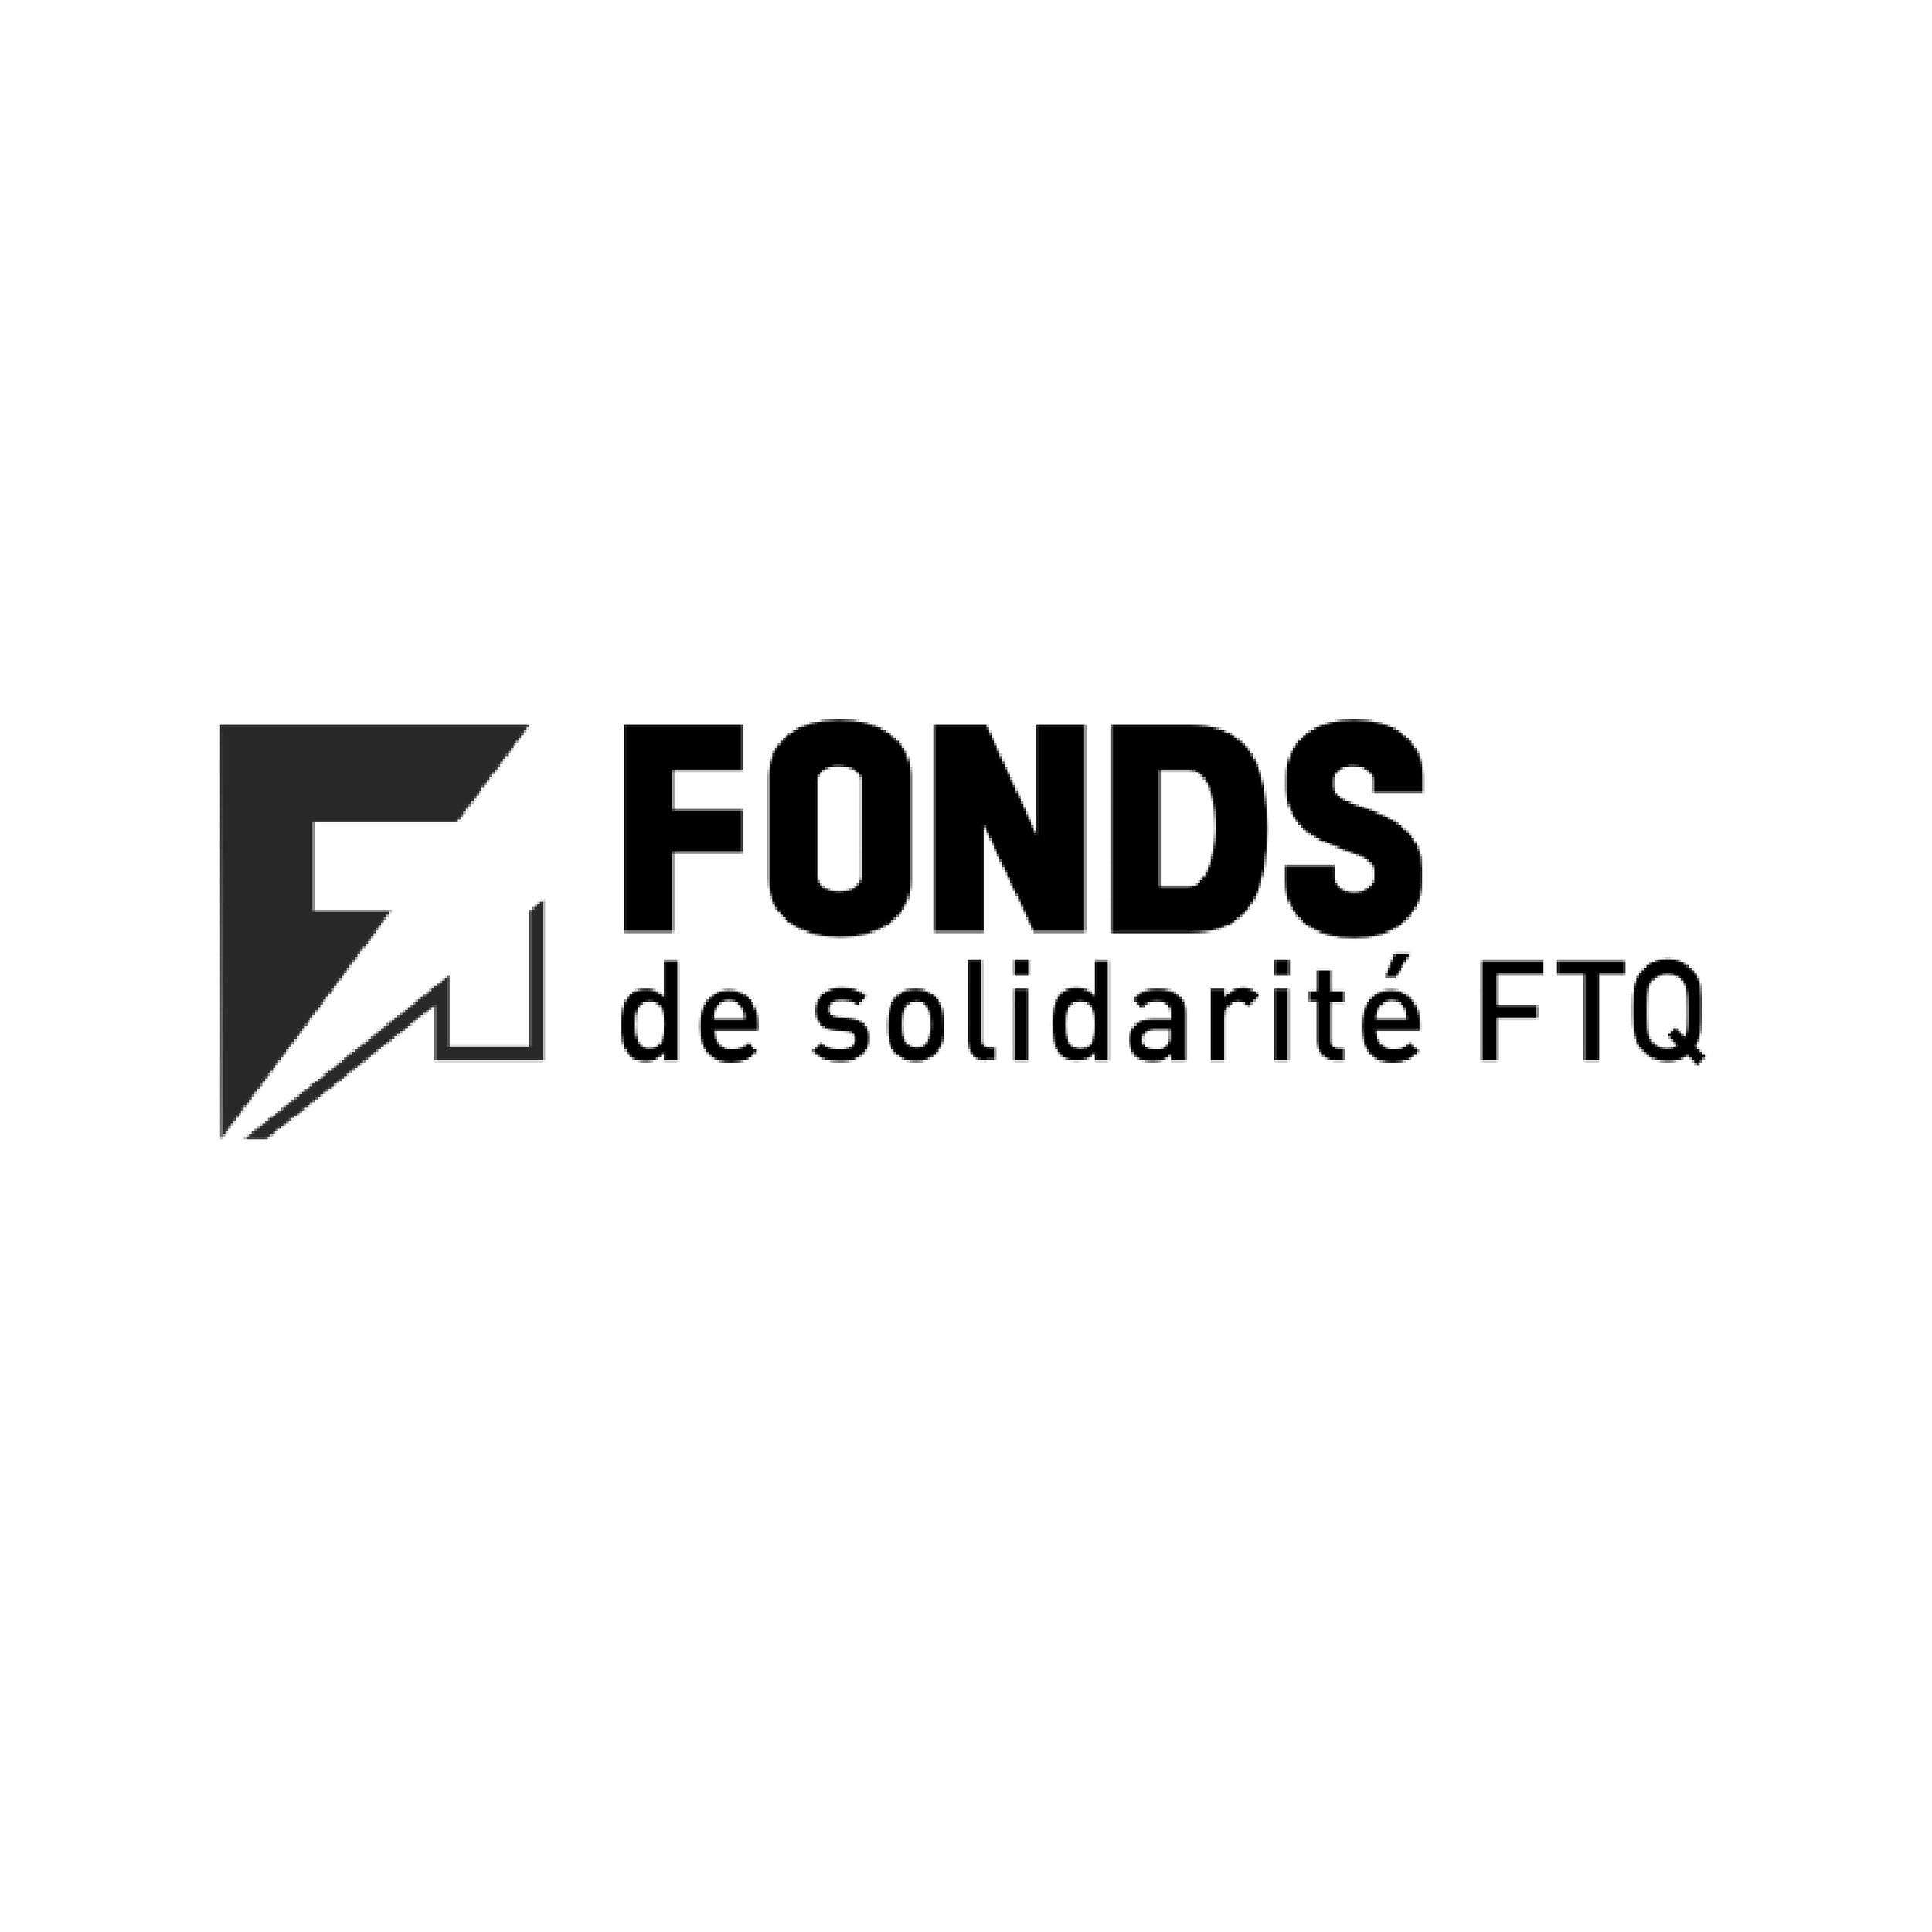 Fond de solidarité FTQ